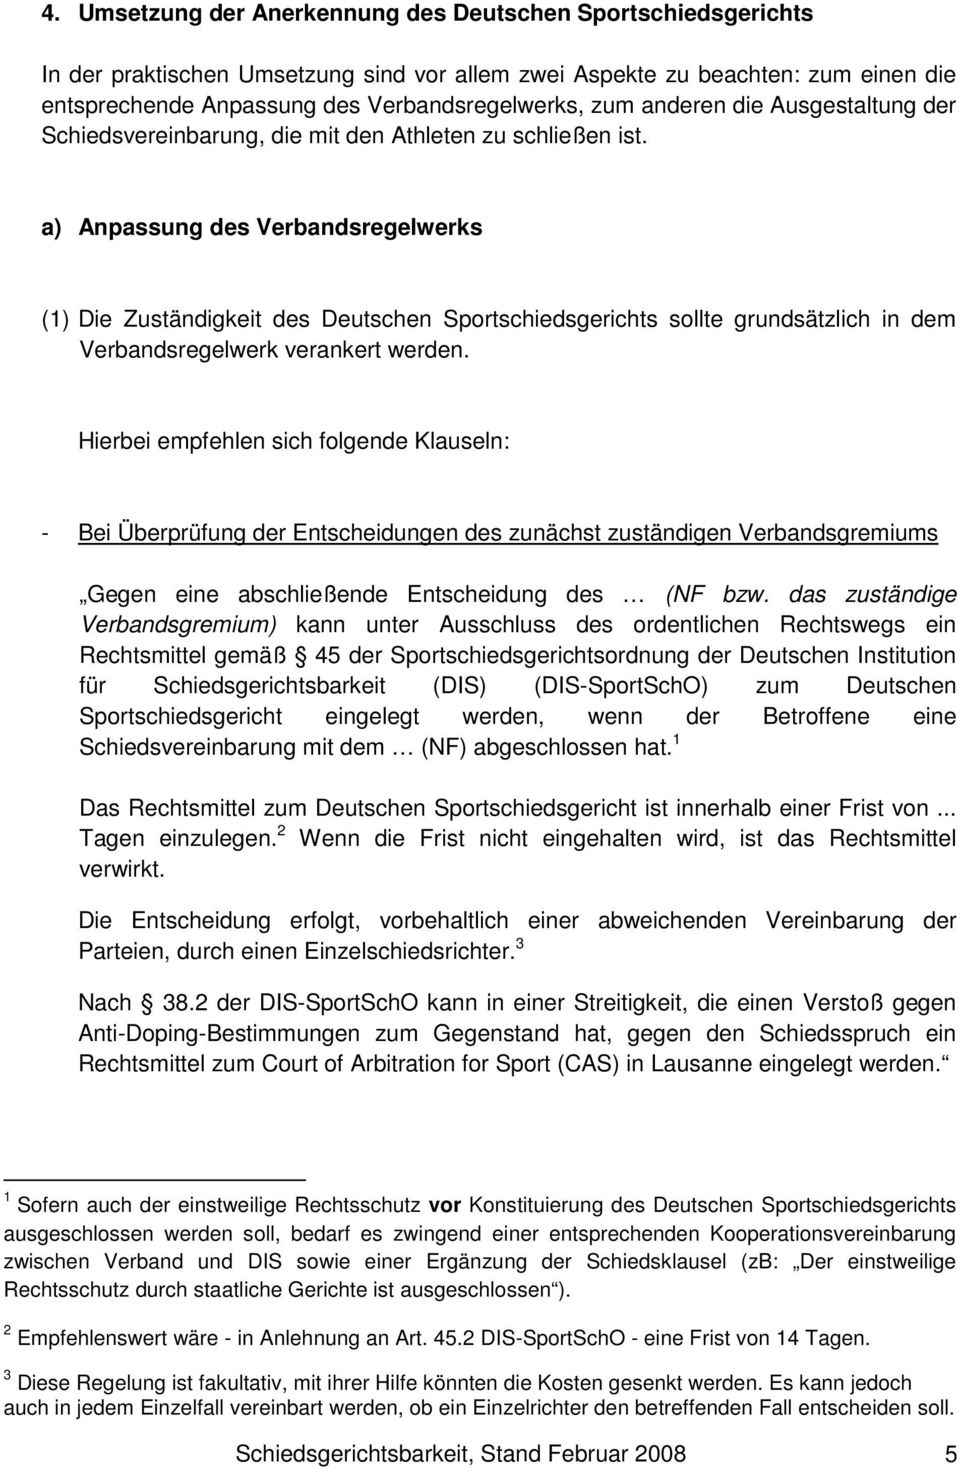 a) Anpassung des Verbandsregelwerks (1) Die Zuständigkeit des Deutschen Sportschiedsgerichts sollte grundsätzlich in dem Verbandsregelwerk verankert werden.